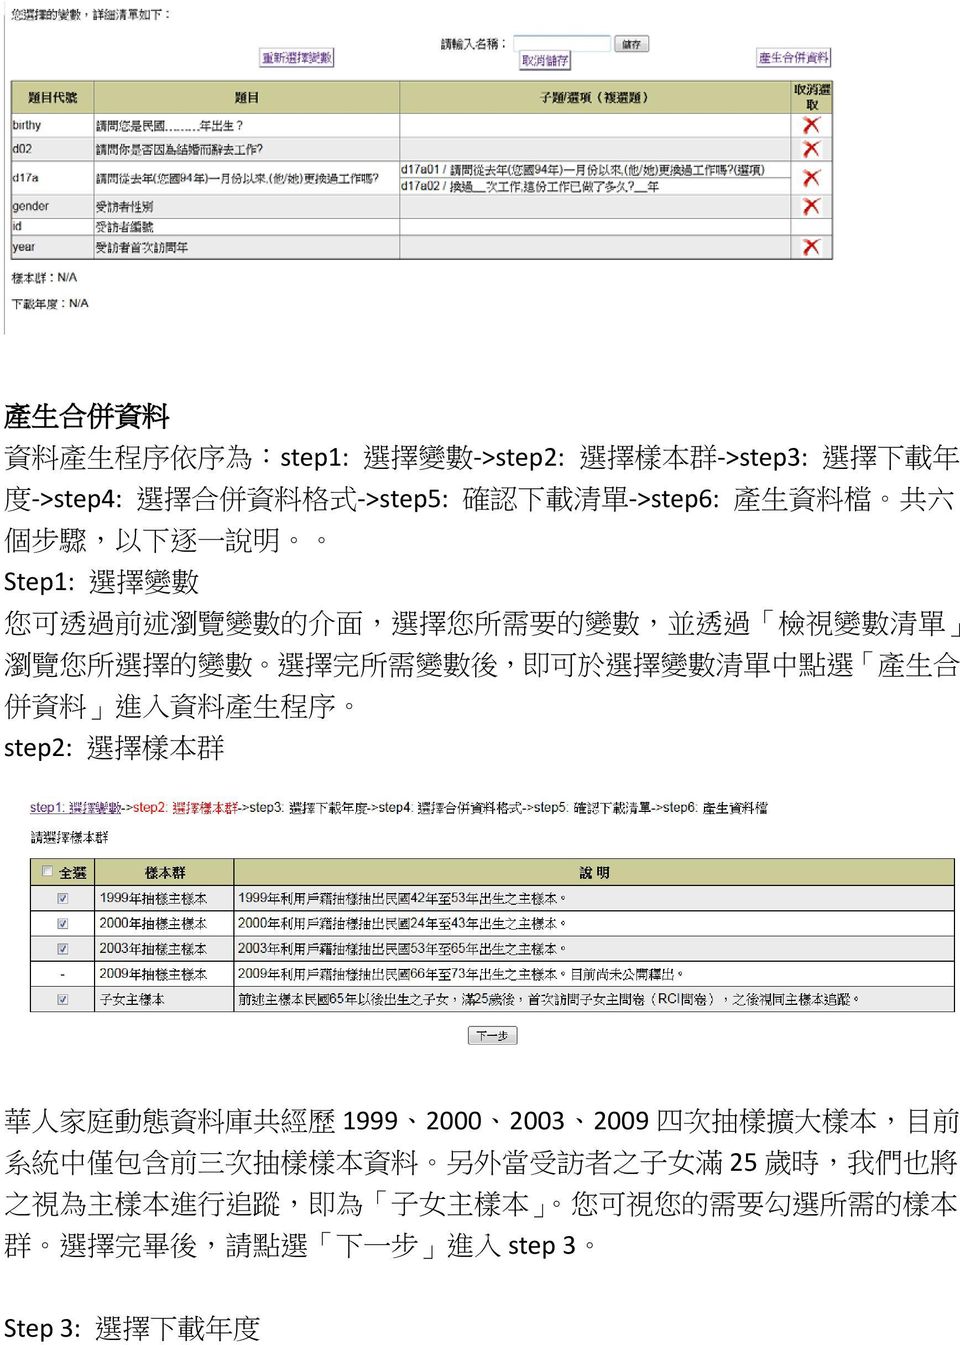 清 單 中 點 選 產 生 合 併 資 料 進 入 資 料 產 生 程 序 step2: 選 擇 樣 本 群 華 人 家 庭 動 態 資 料 庫 共 經 歷 1999 2000 2003 2009 四 次 抽 樣 擴 大 樣 本, 目 前 系 統 中 僅 包 含 前 三 次 抽 樣 樣 本 資 料 另